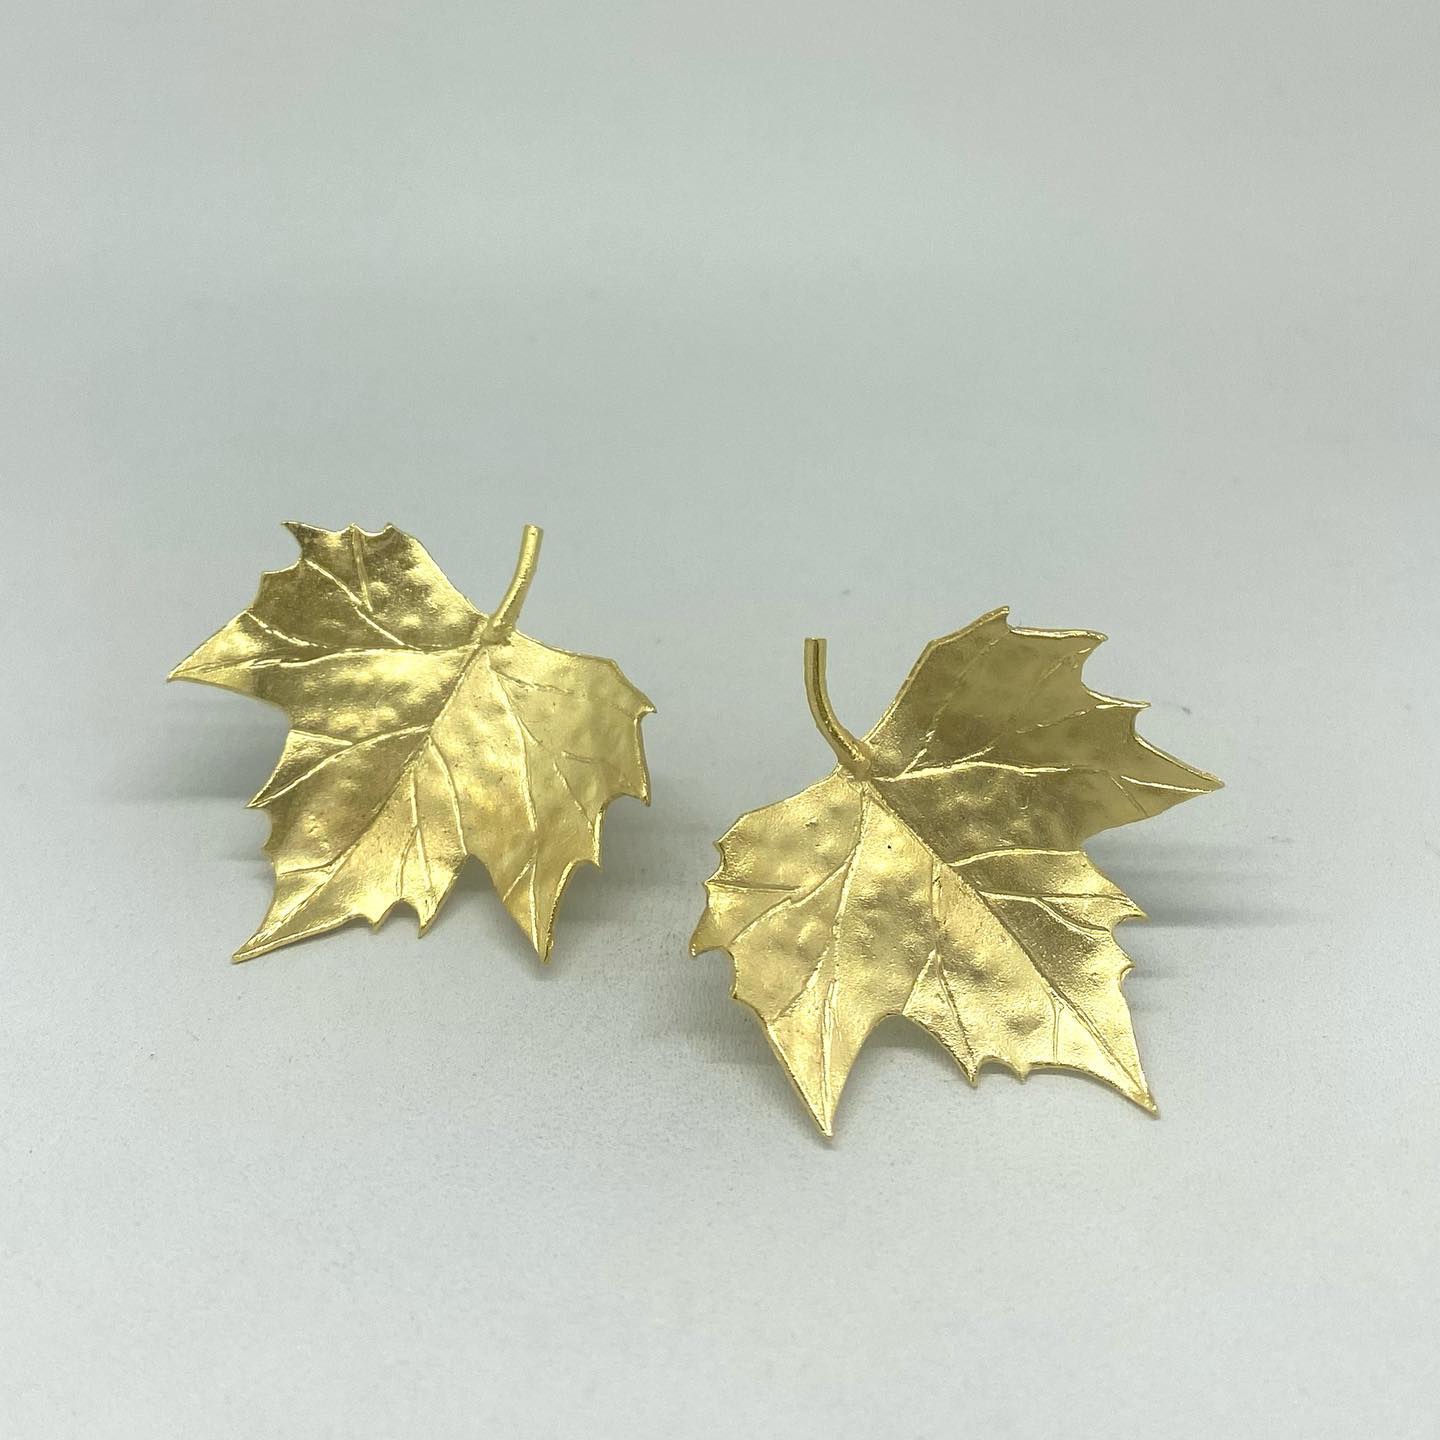 Pendientes hojas de Maple 😍 

———
#alejandrocarrerojoyas #joyasdeautor #maple #pendientes